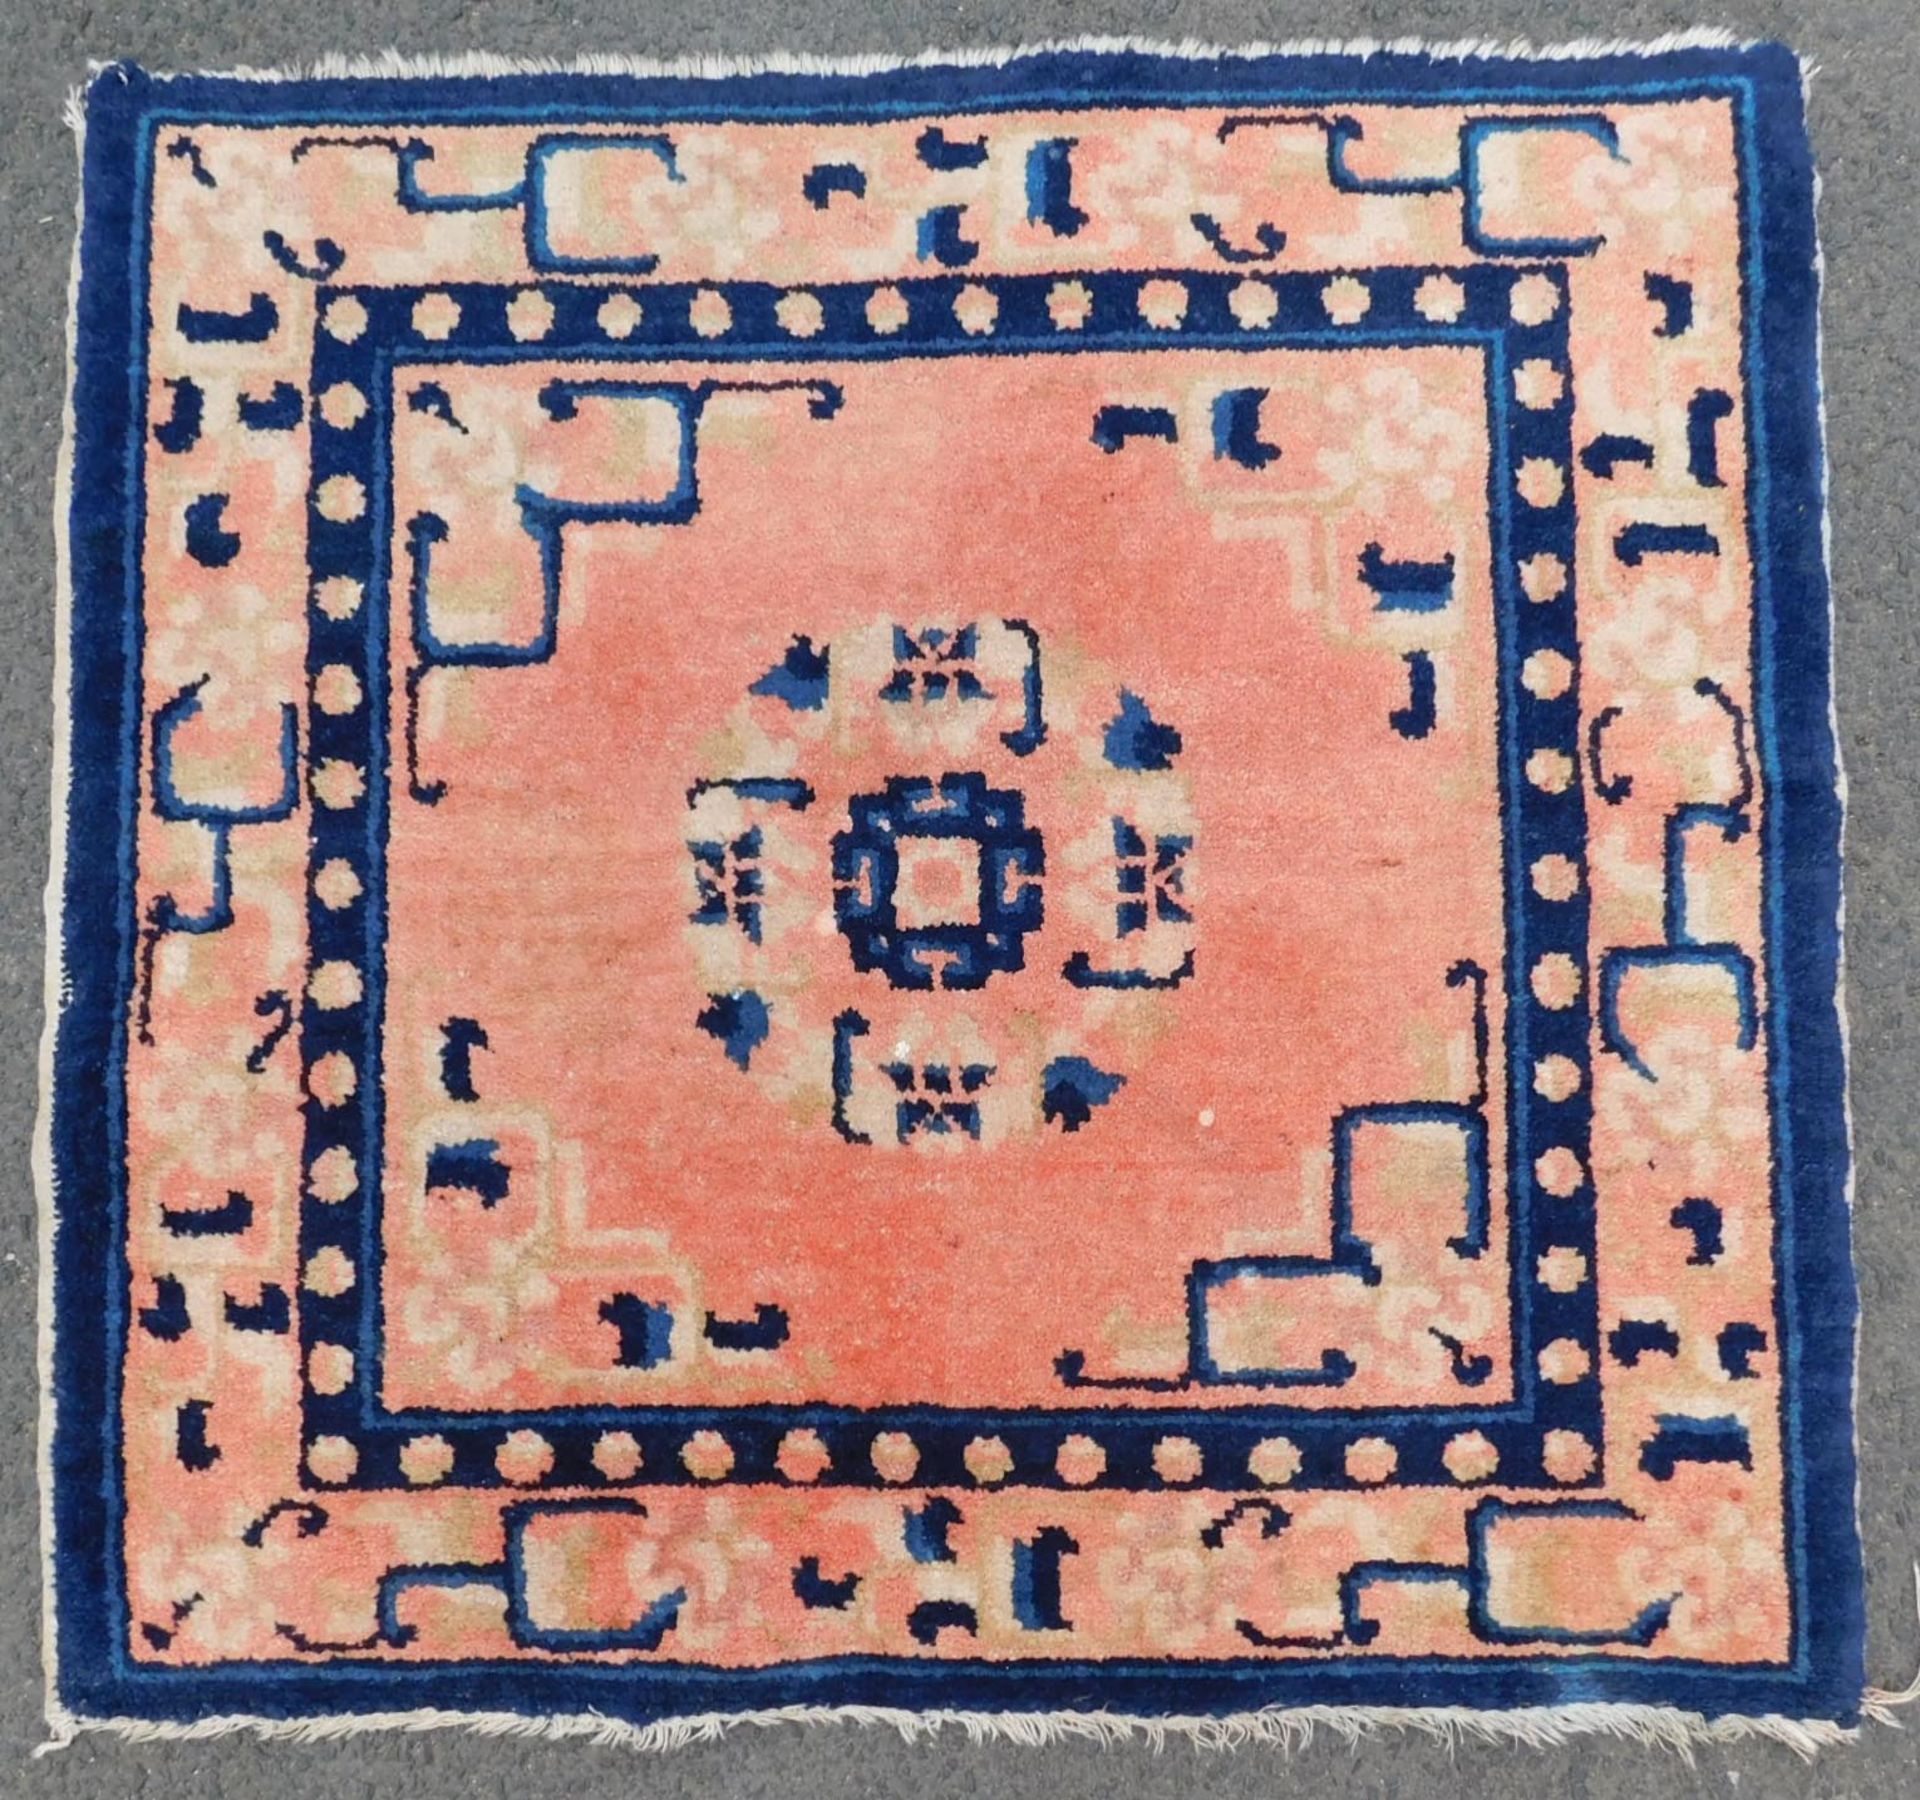 Baotou, Paotou Seat carpet. Antique, around 100 - 150 years old.